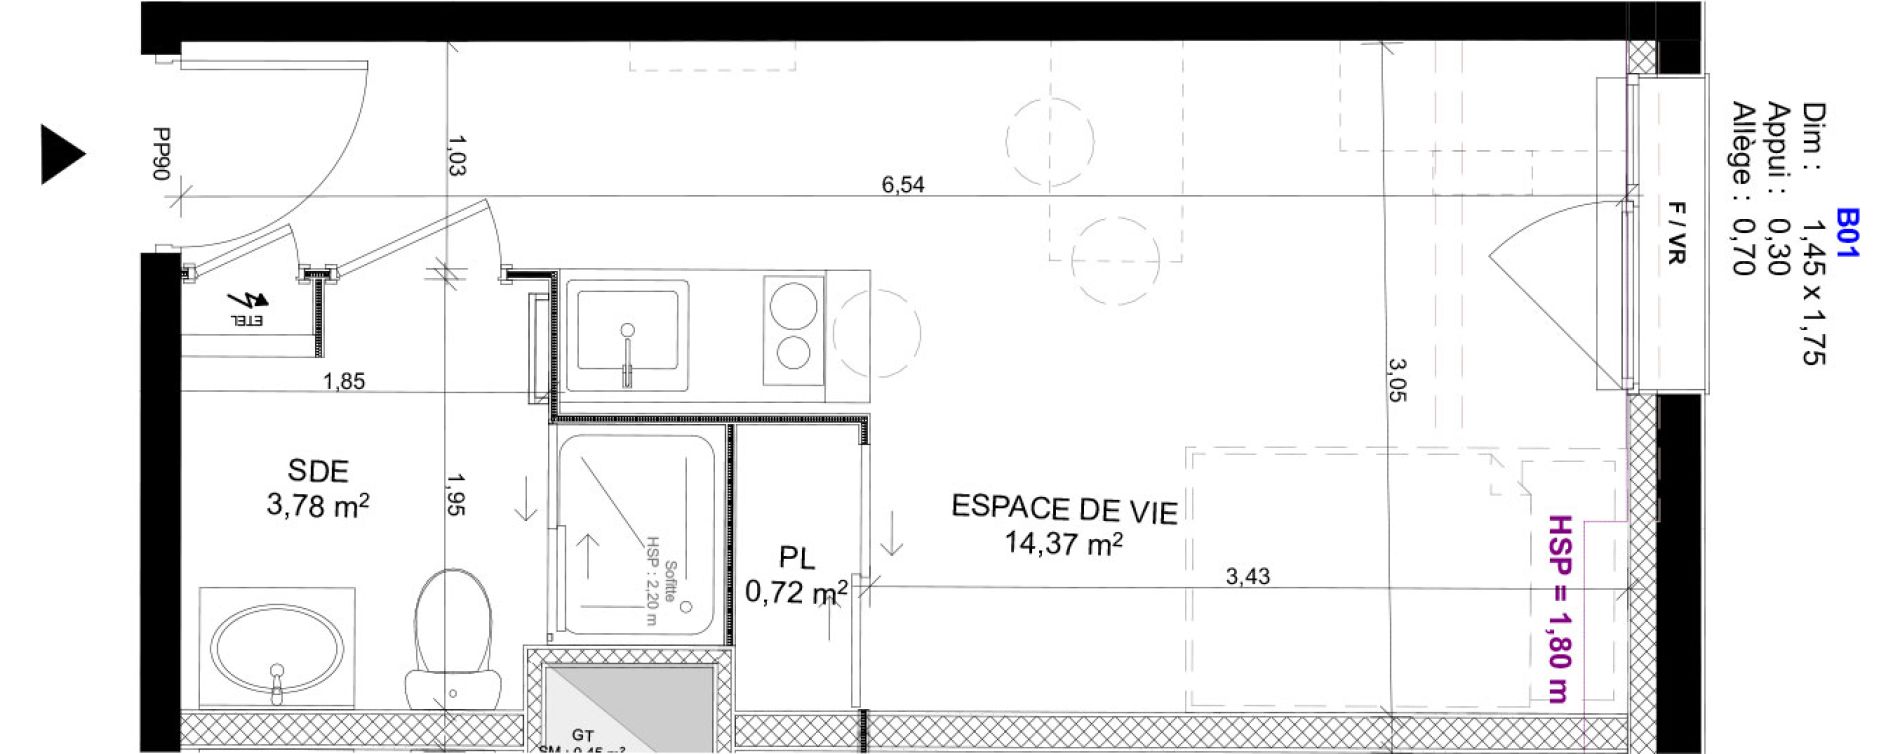 Appartement T1 meubl&eacute; de 18,87 m2 au Havre Sainte marie - saint leon